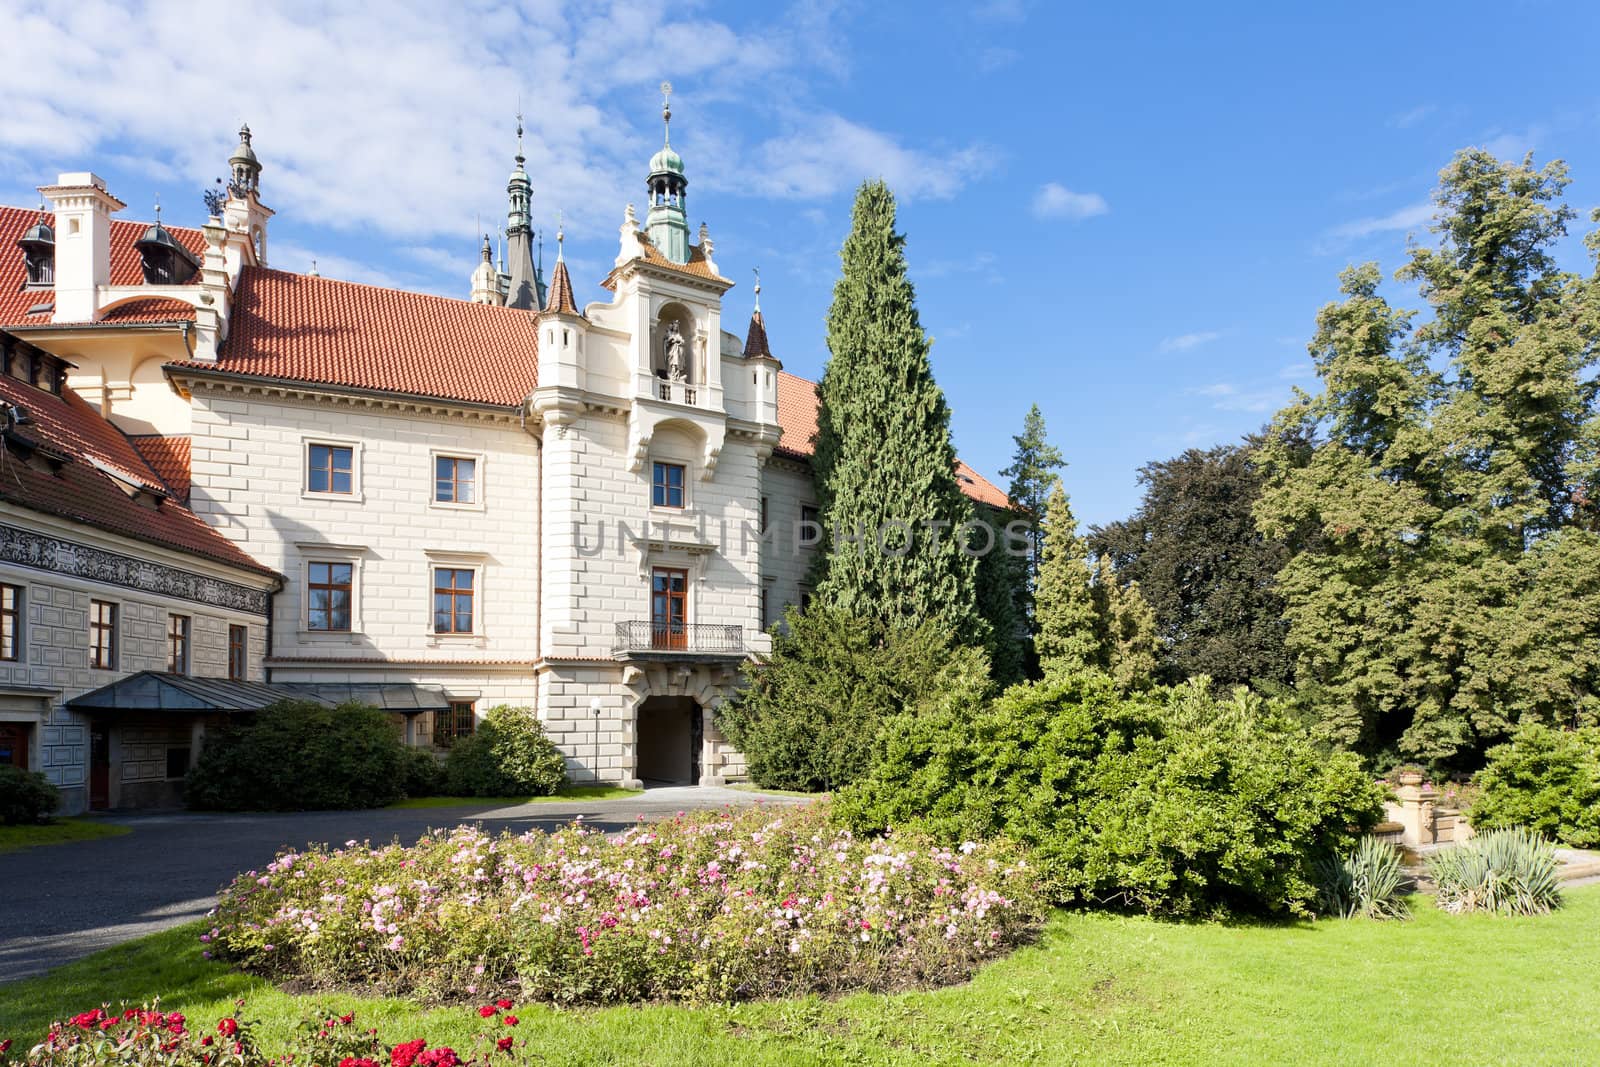 Pruhonice Palace, Czech Republic by phbcz